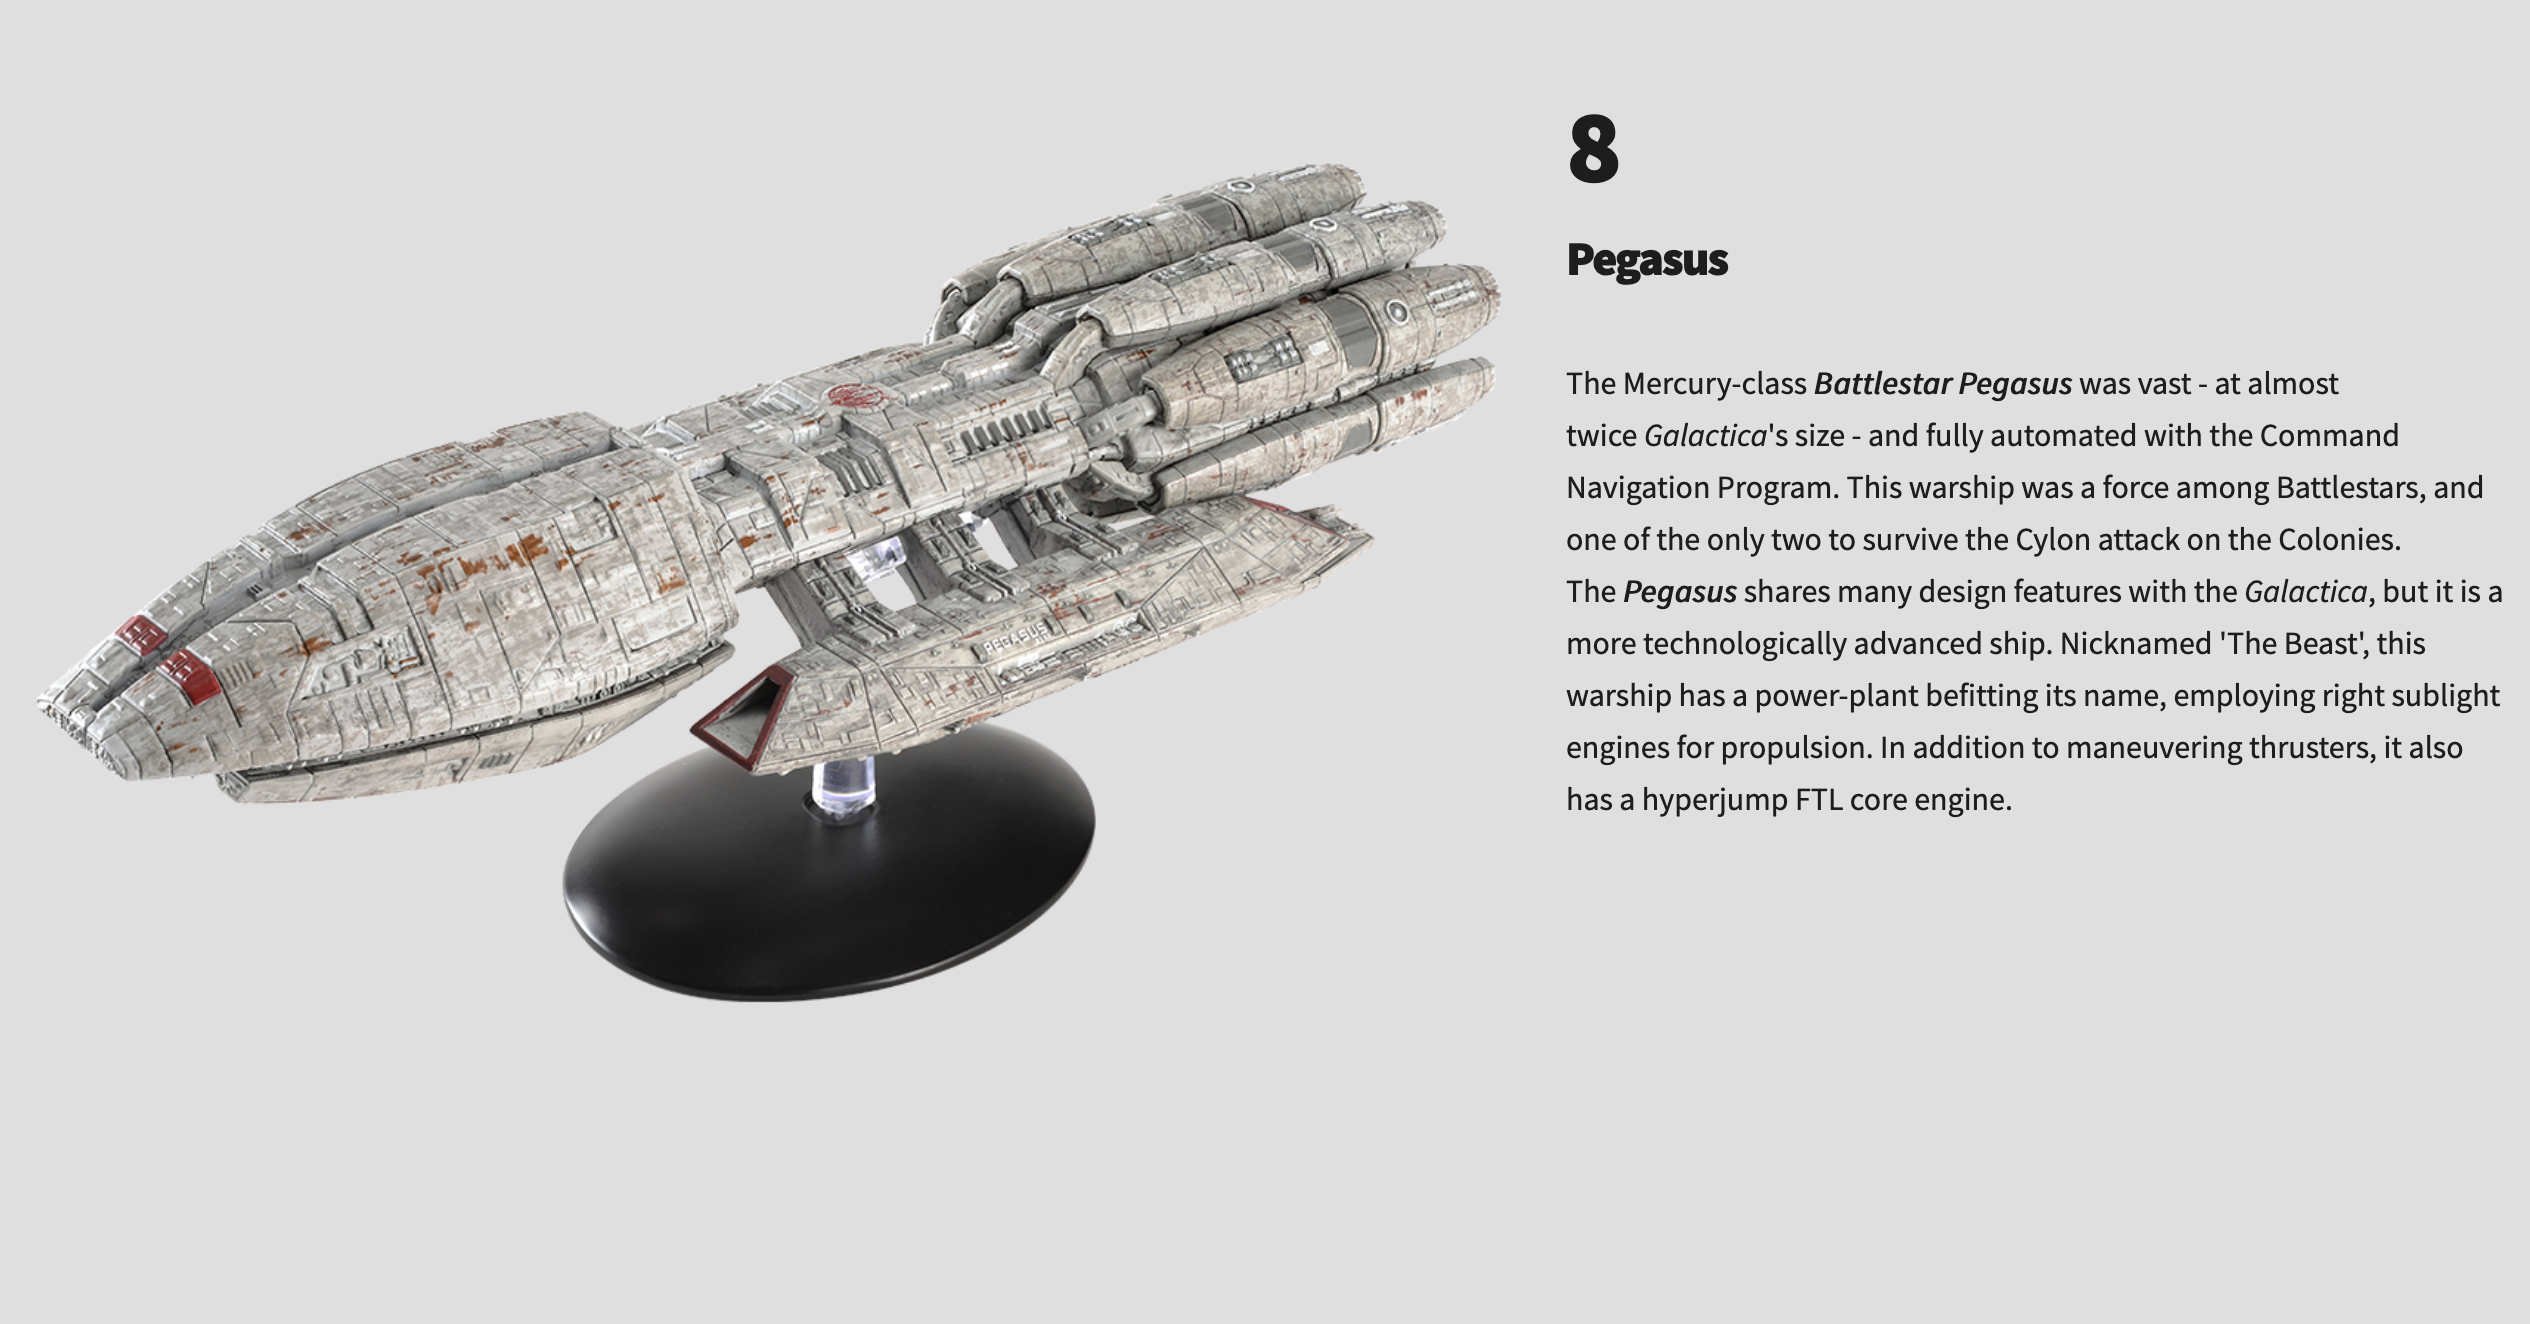 Eaglemoss Battlestar Galactica Pegasus Ship with Collector Magazine #8 In Stock